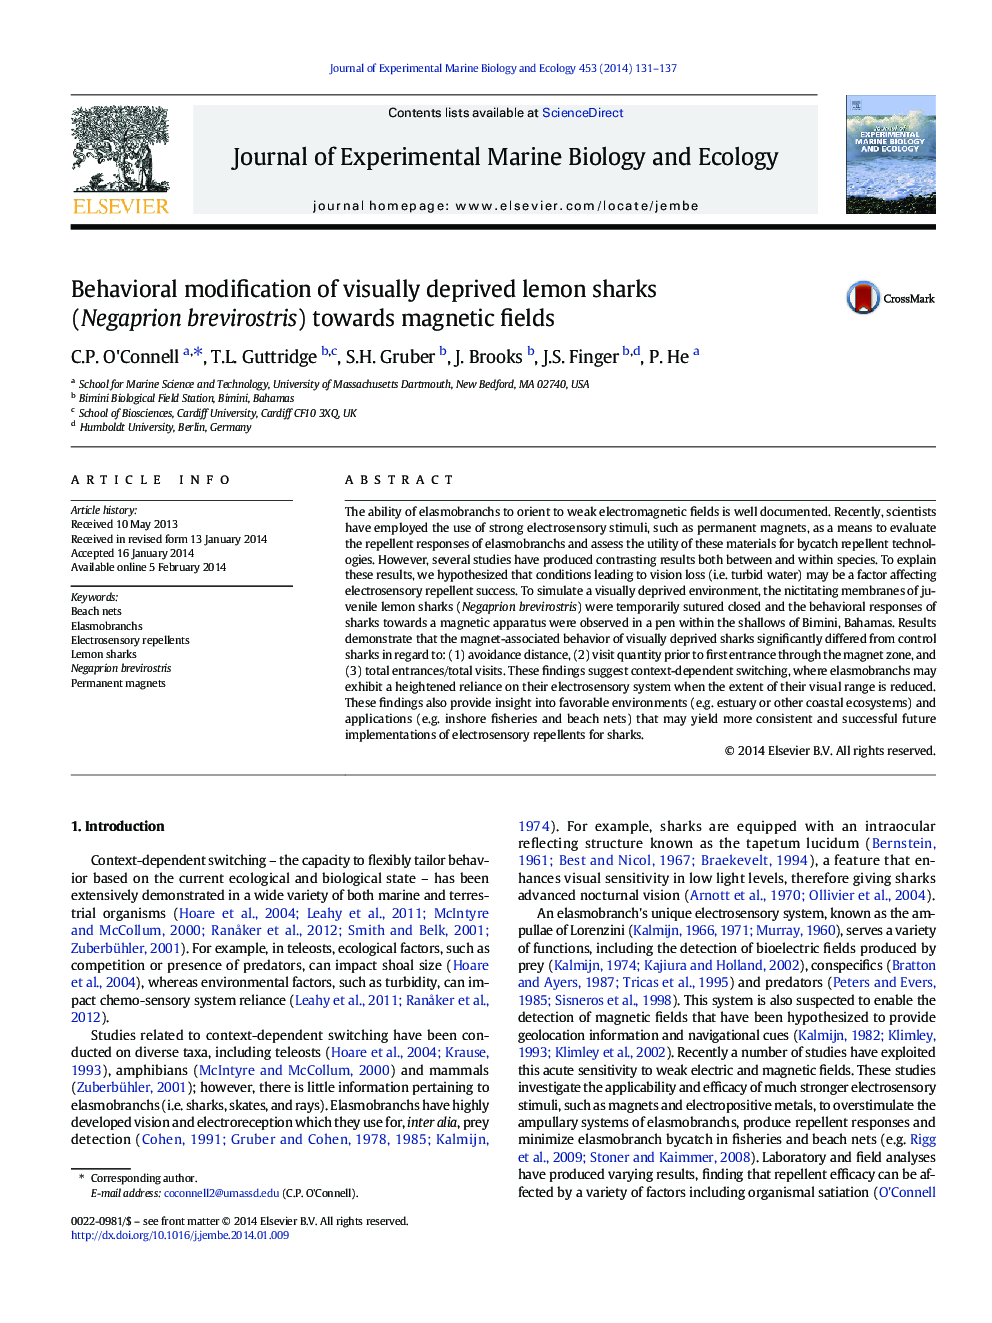 Behavioral modification of visually deprived lemon sharks (Negaprion brevirostris) towards magnetic fields